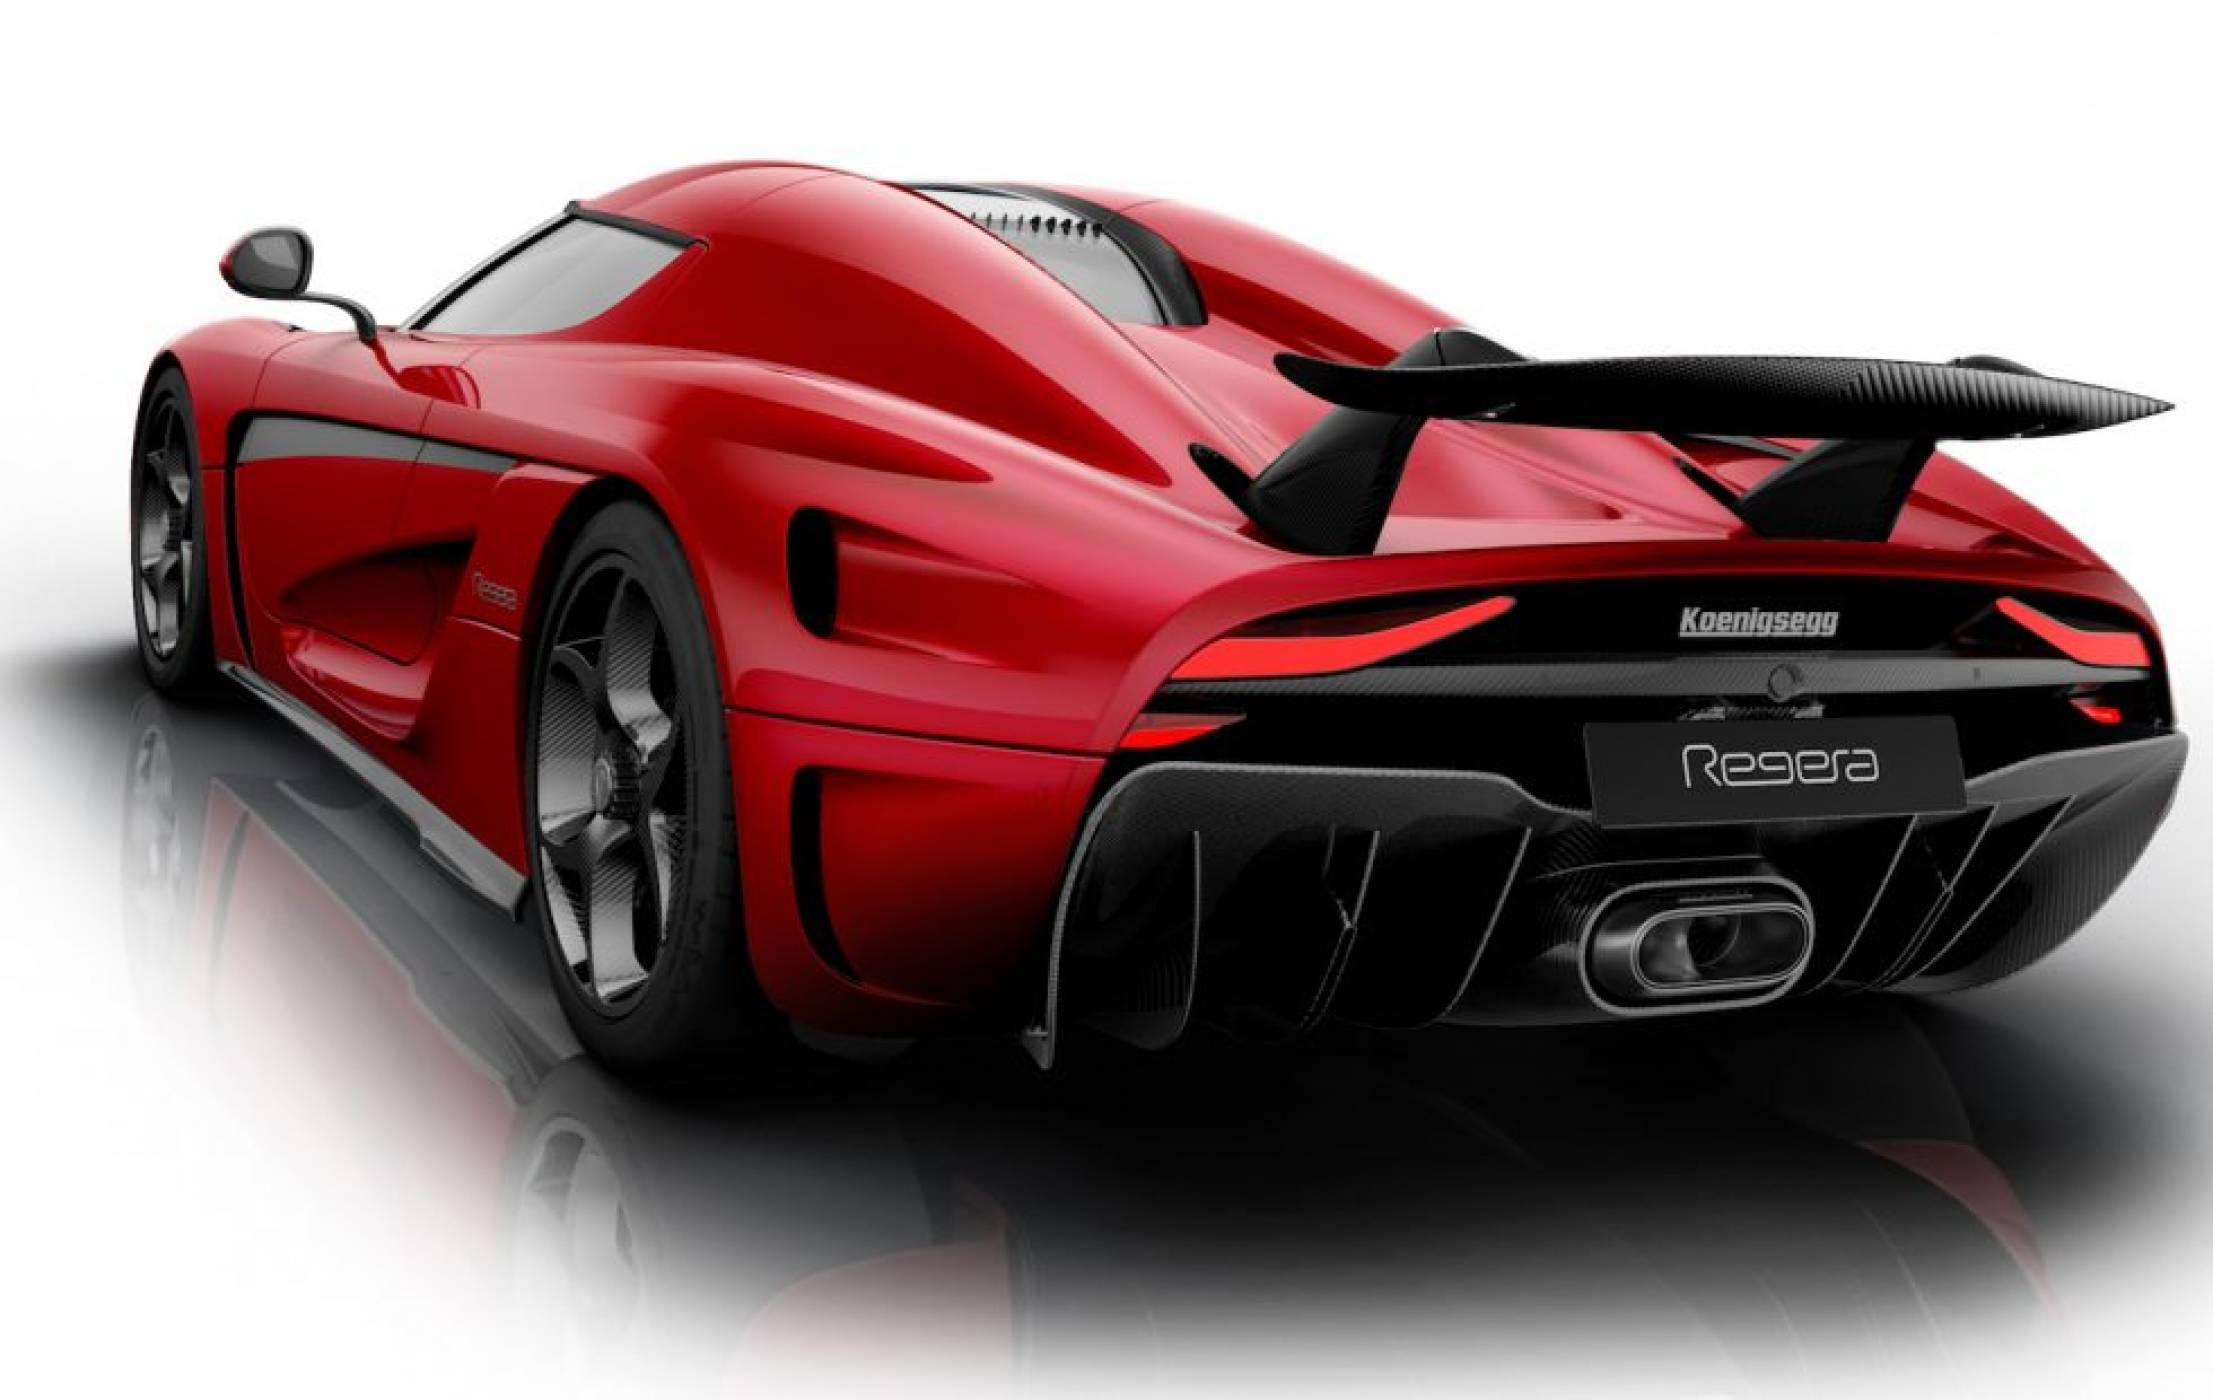 Този краш тест на Koenigsegg ще накара сърцето ви да прескочи за миг